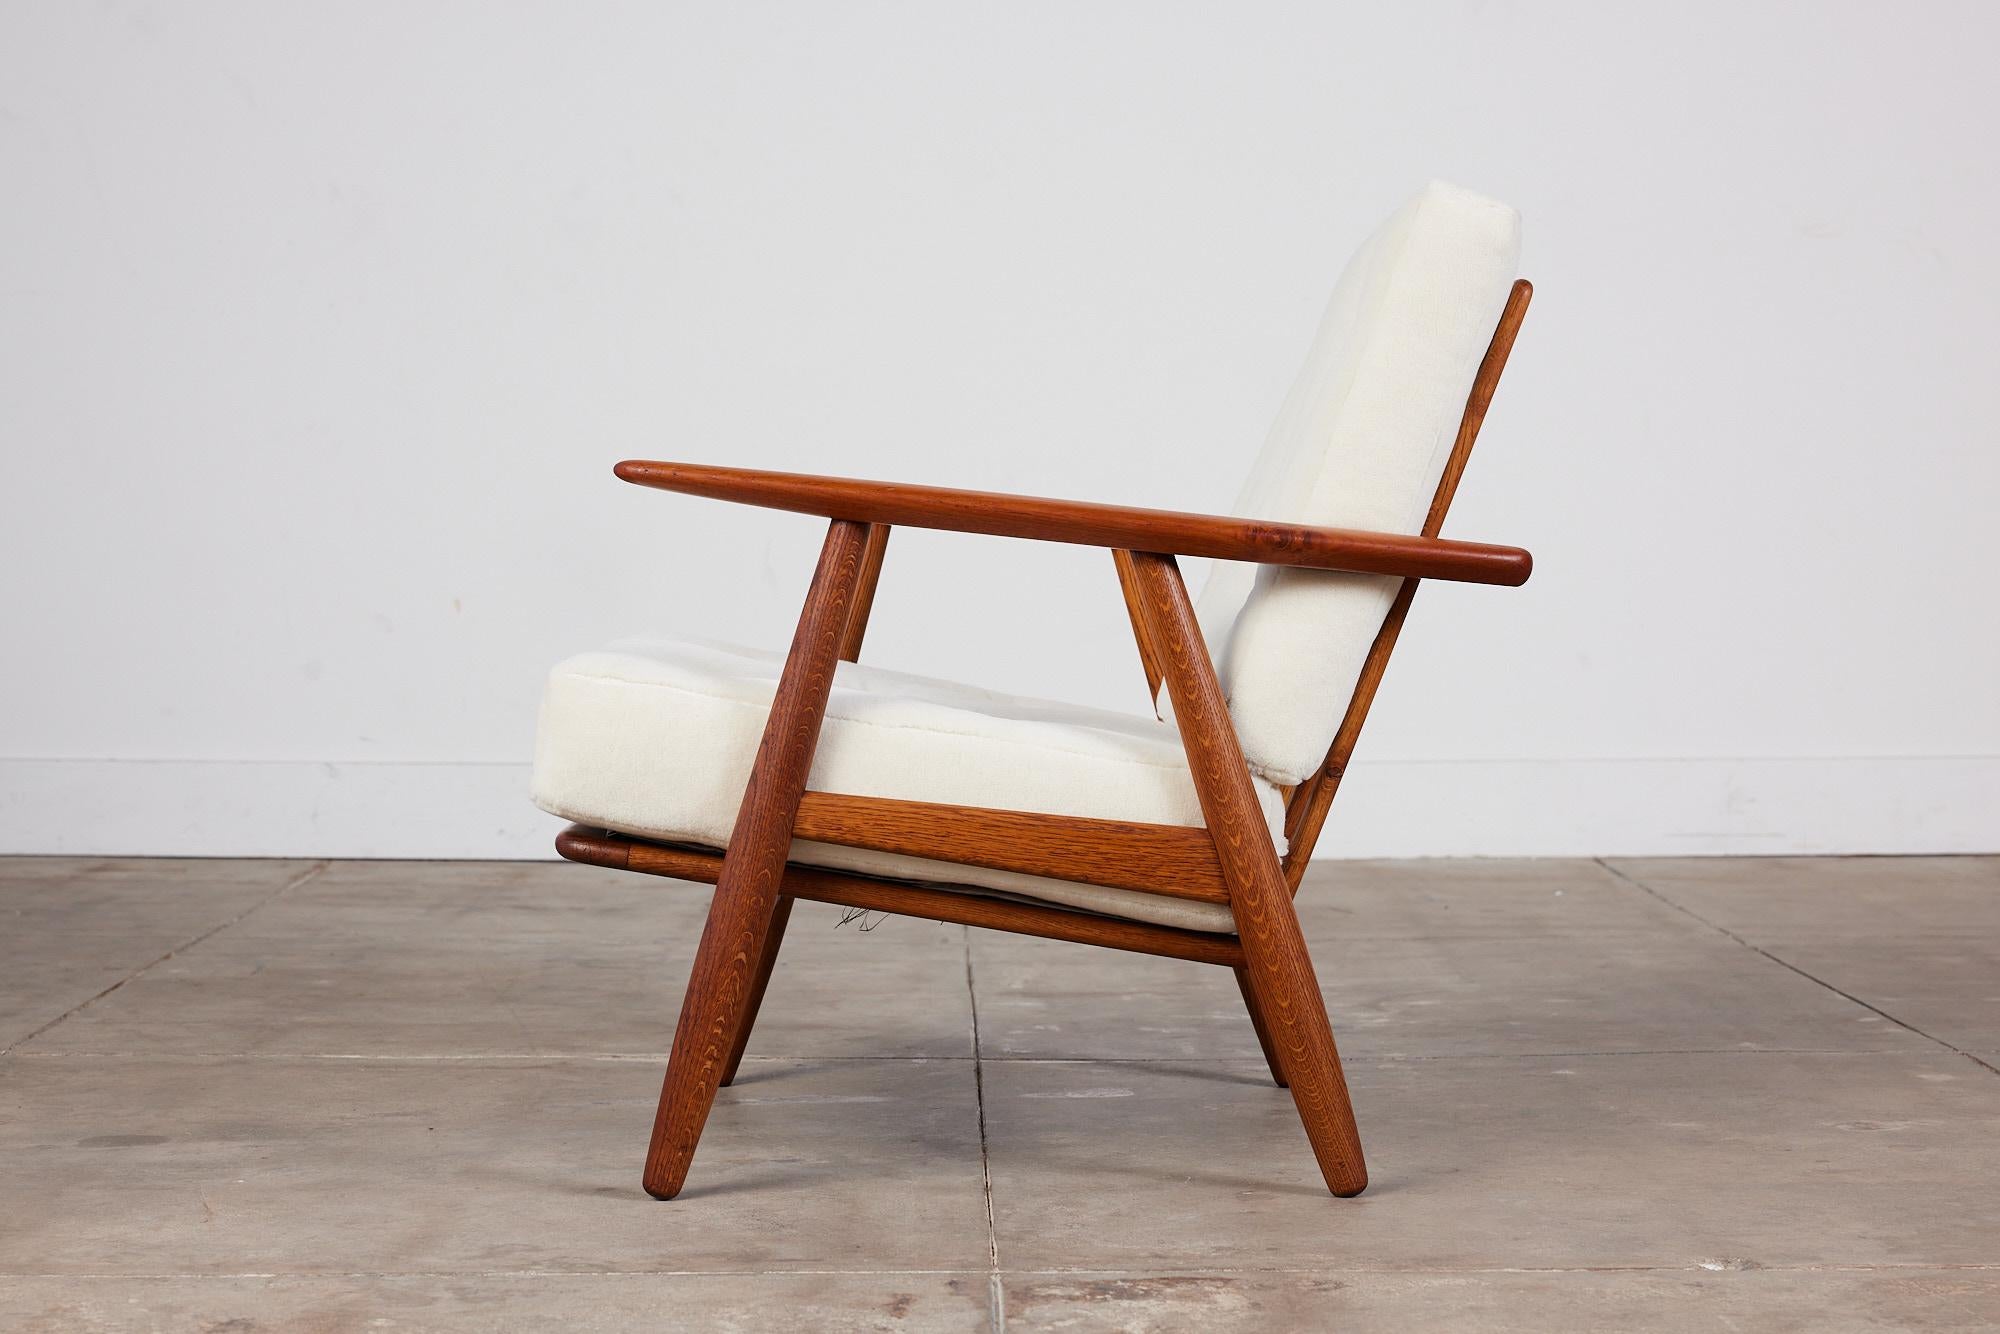 Chaise longue de Hans Wegner pour GETAMA, c.1950s, Danemark. La chaise est composée d'un cadre en teck et en chêne massif et d'un dossier à lattes verticales. Les coussins d'assise et de dossier ont été remplacés et sont recouverts d'un tissu en